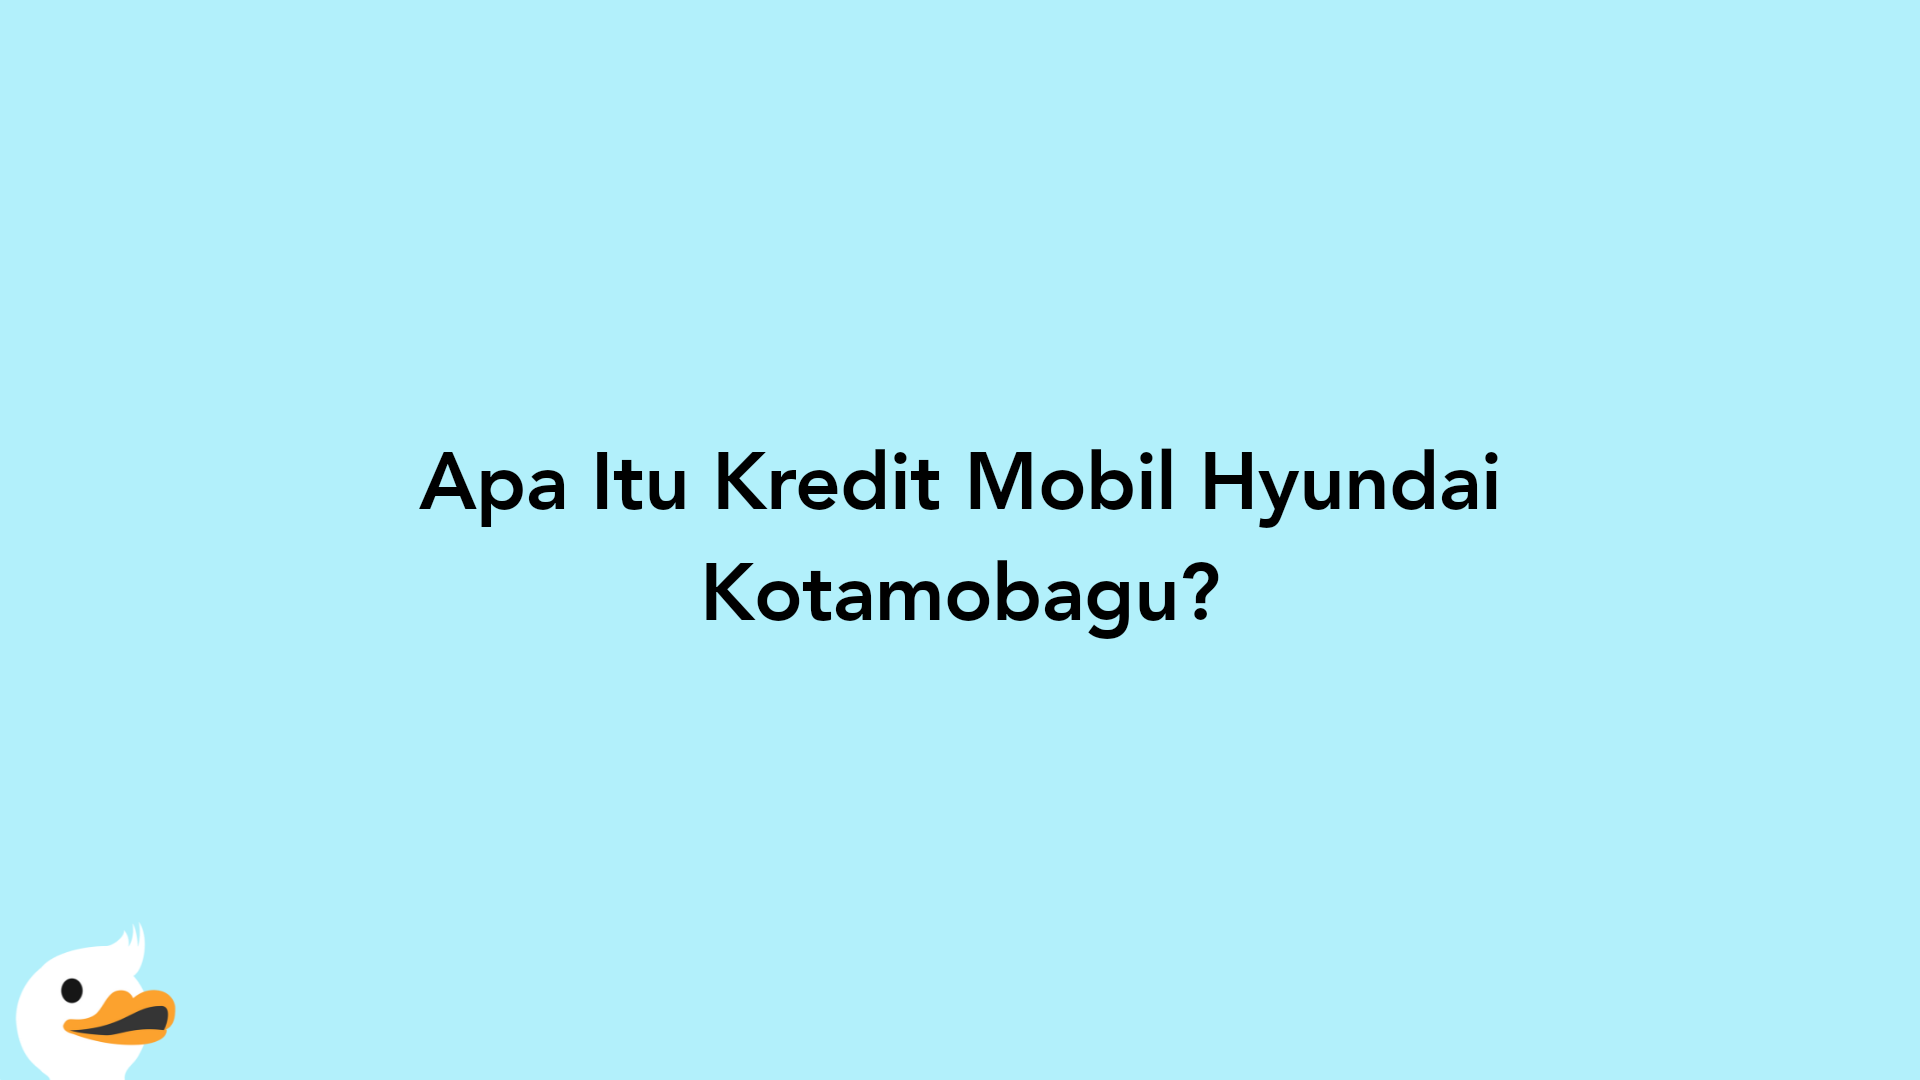 Apa Itu Kredit Mobil Hyundai Kotamobagu?